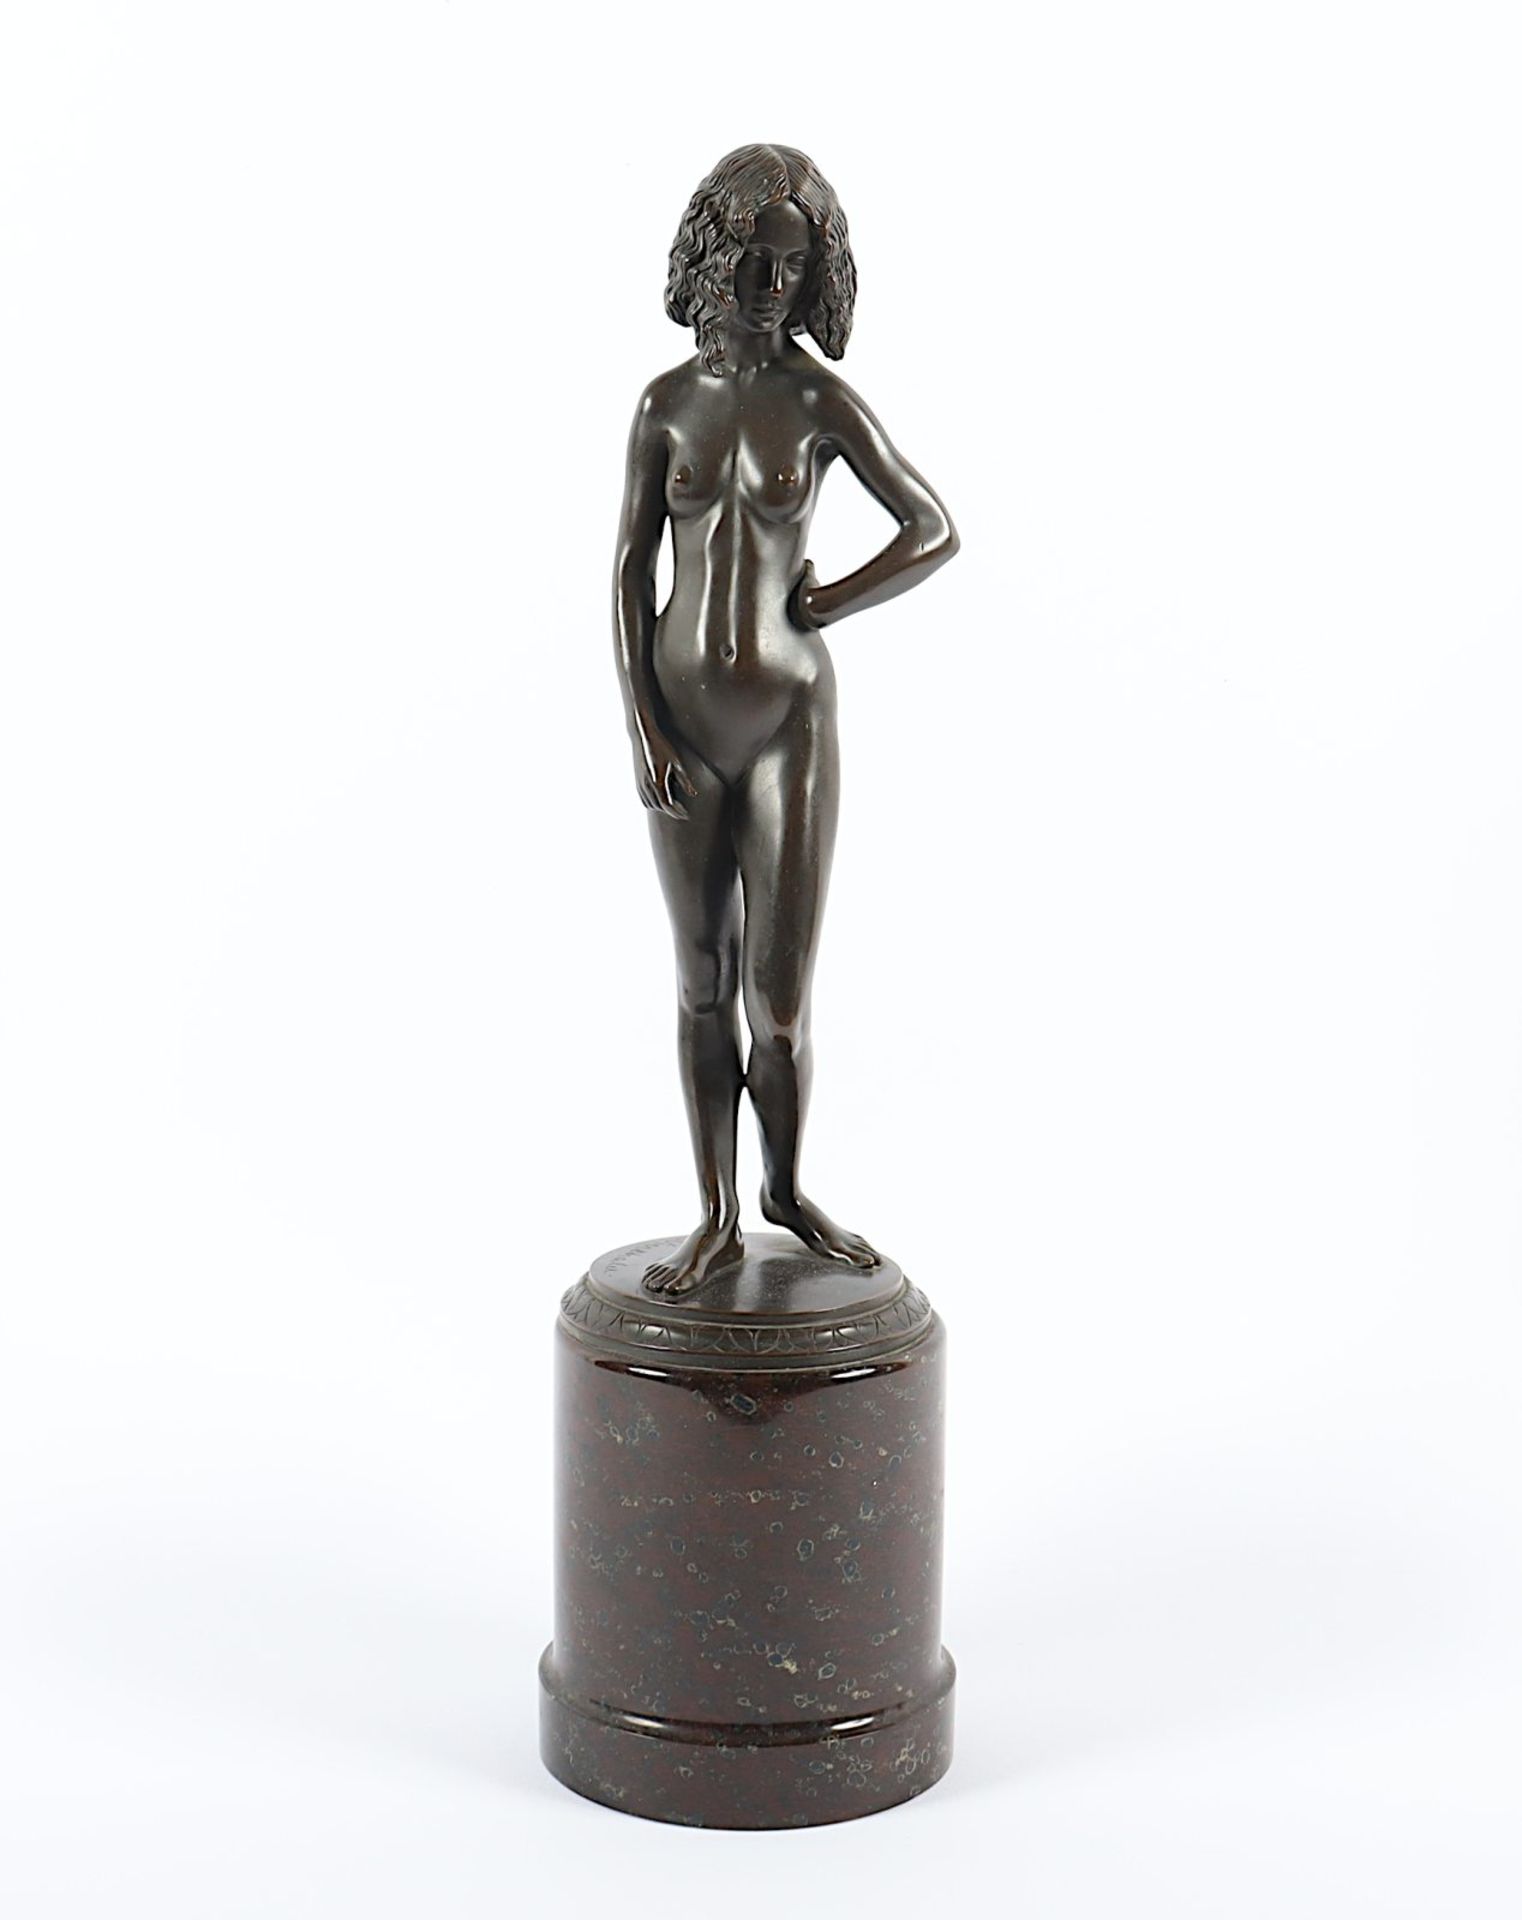 Vierthaler, Johann, "Stehende", Bronze